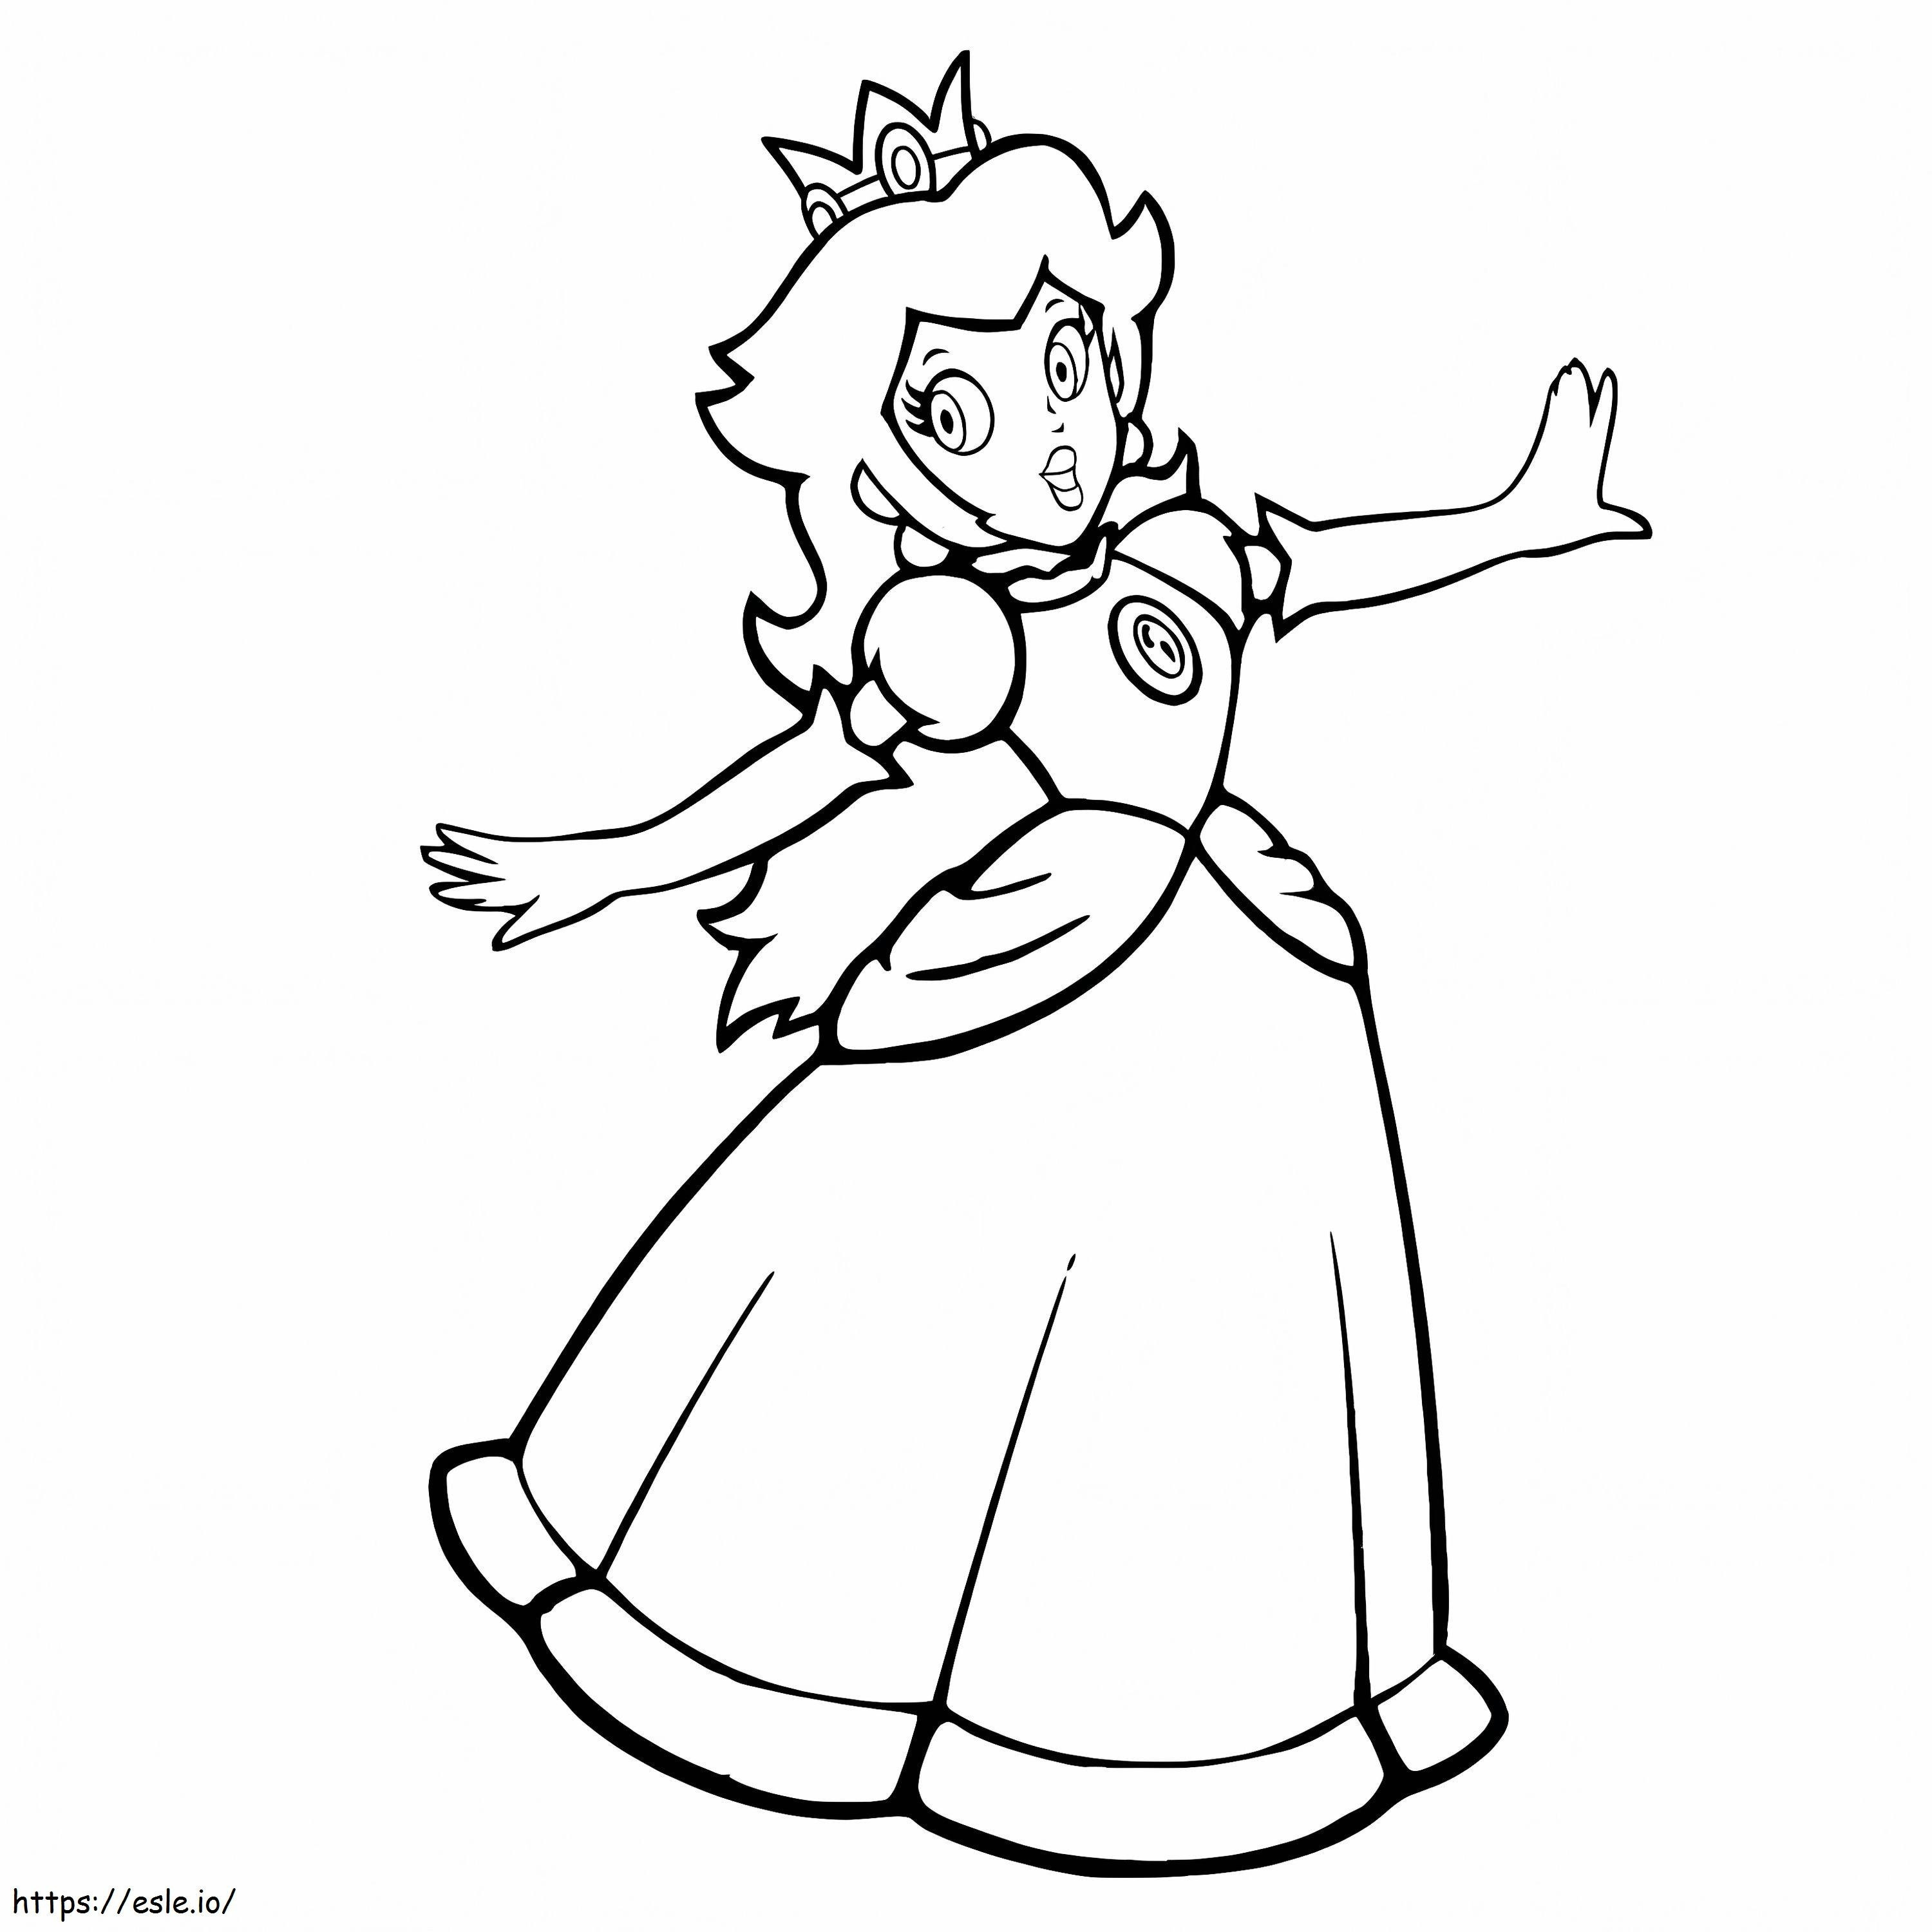 Princess Peach Happy coloring page